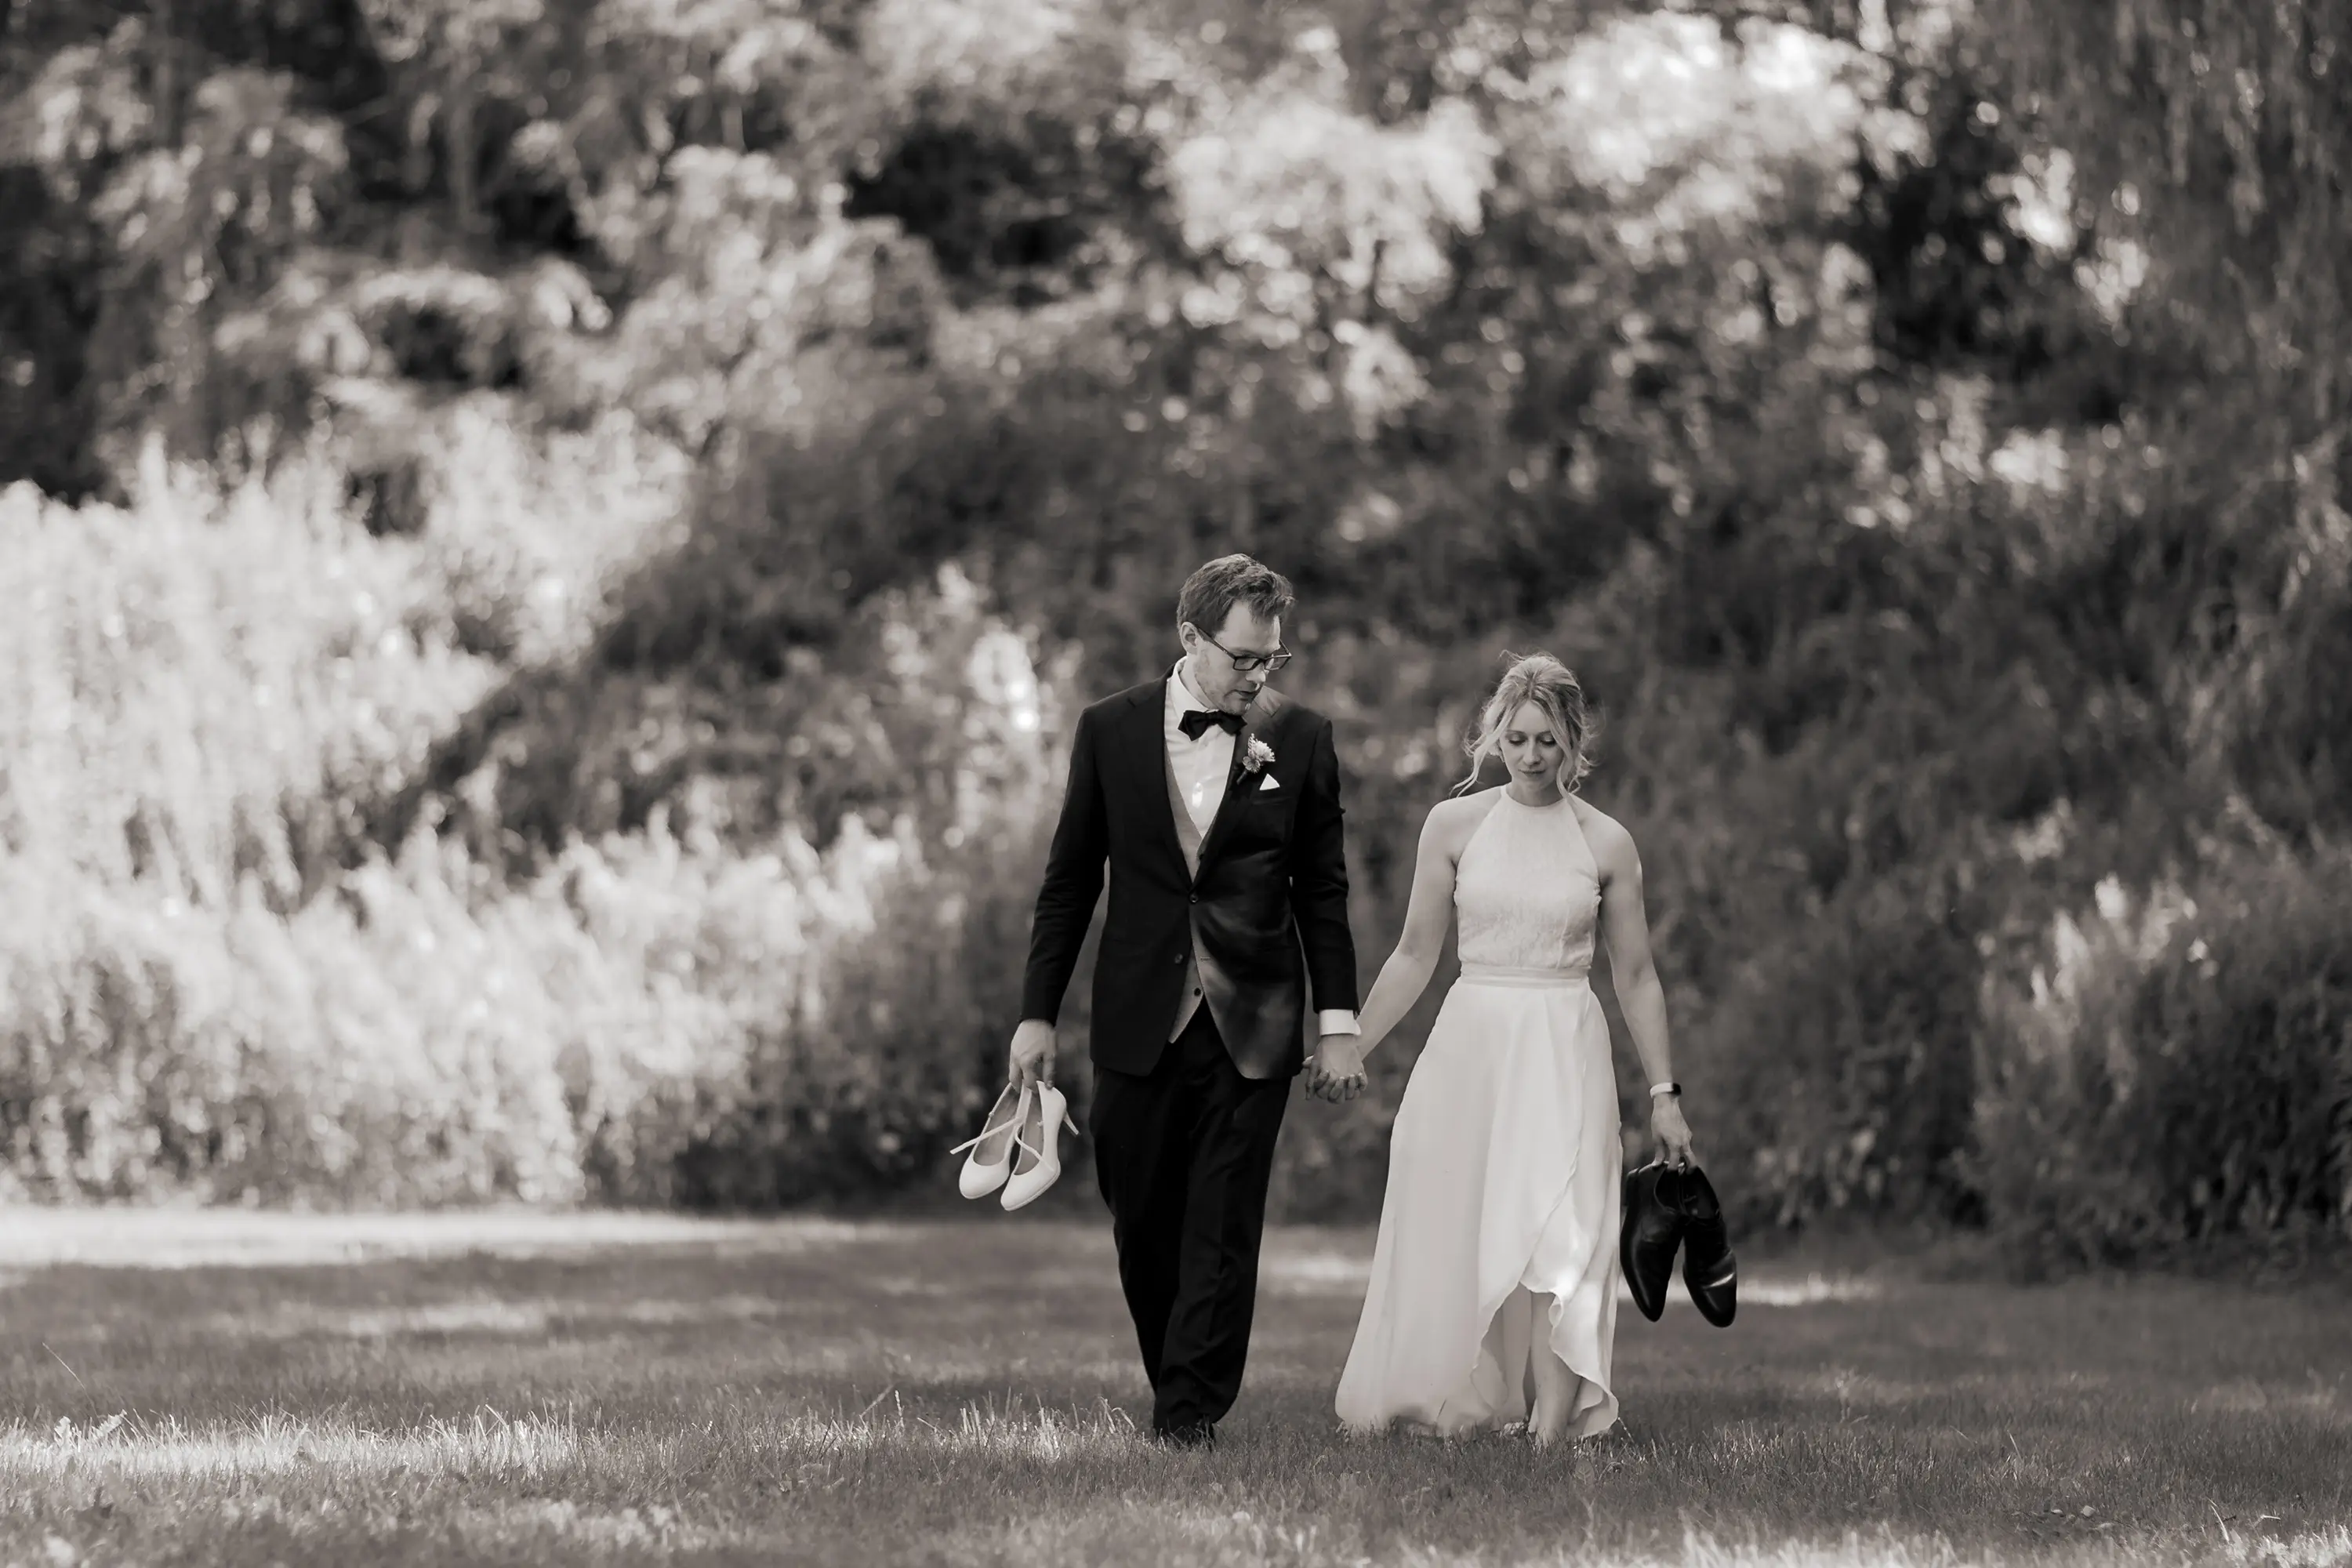 Schwarz-weiß Foto wie das Brautpaar auf die Kamera zuläuft, sie haben die Schuhe des jeweils anderen in der Hand.